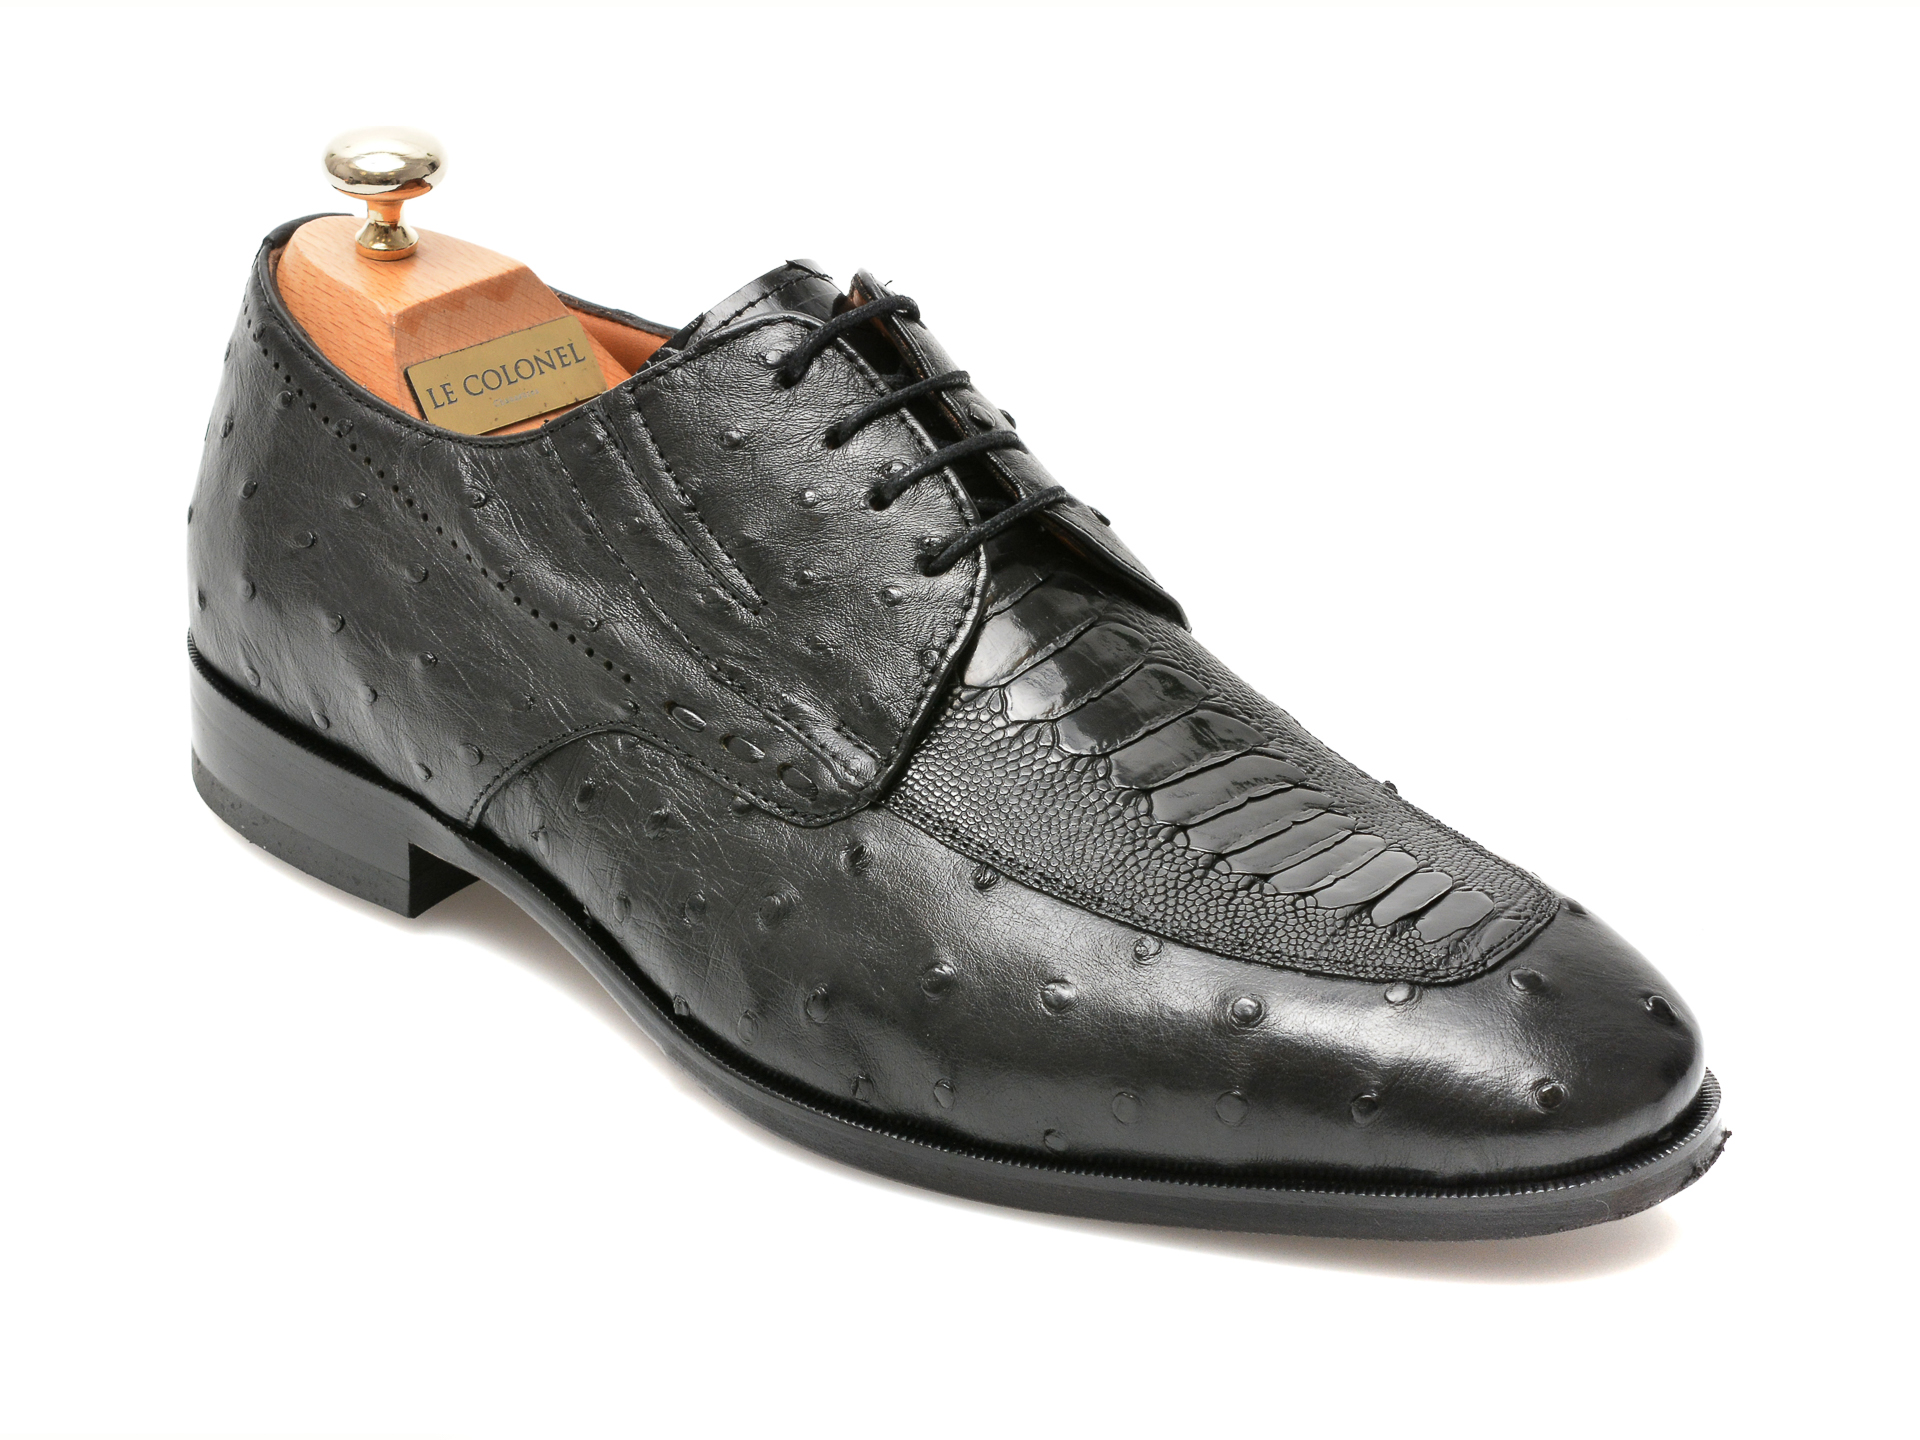 Pantofi LE COLONEL negri, 48701, din piele naturala 2022 ❤️ Pret Super tezyo.ro imagine noua 2022